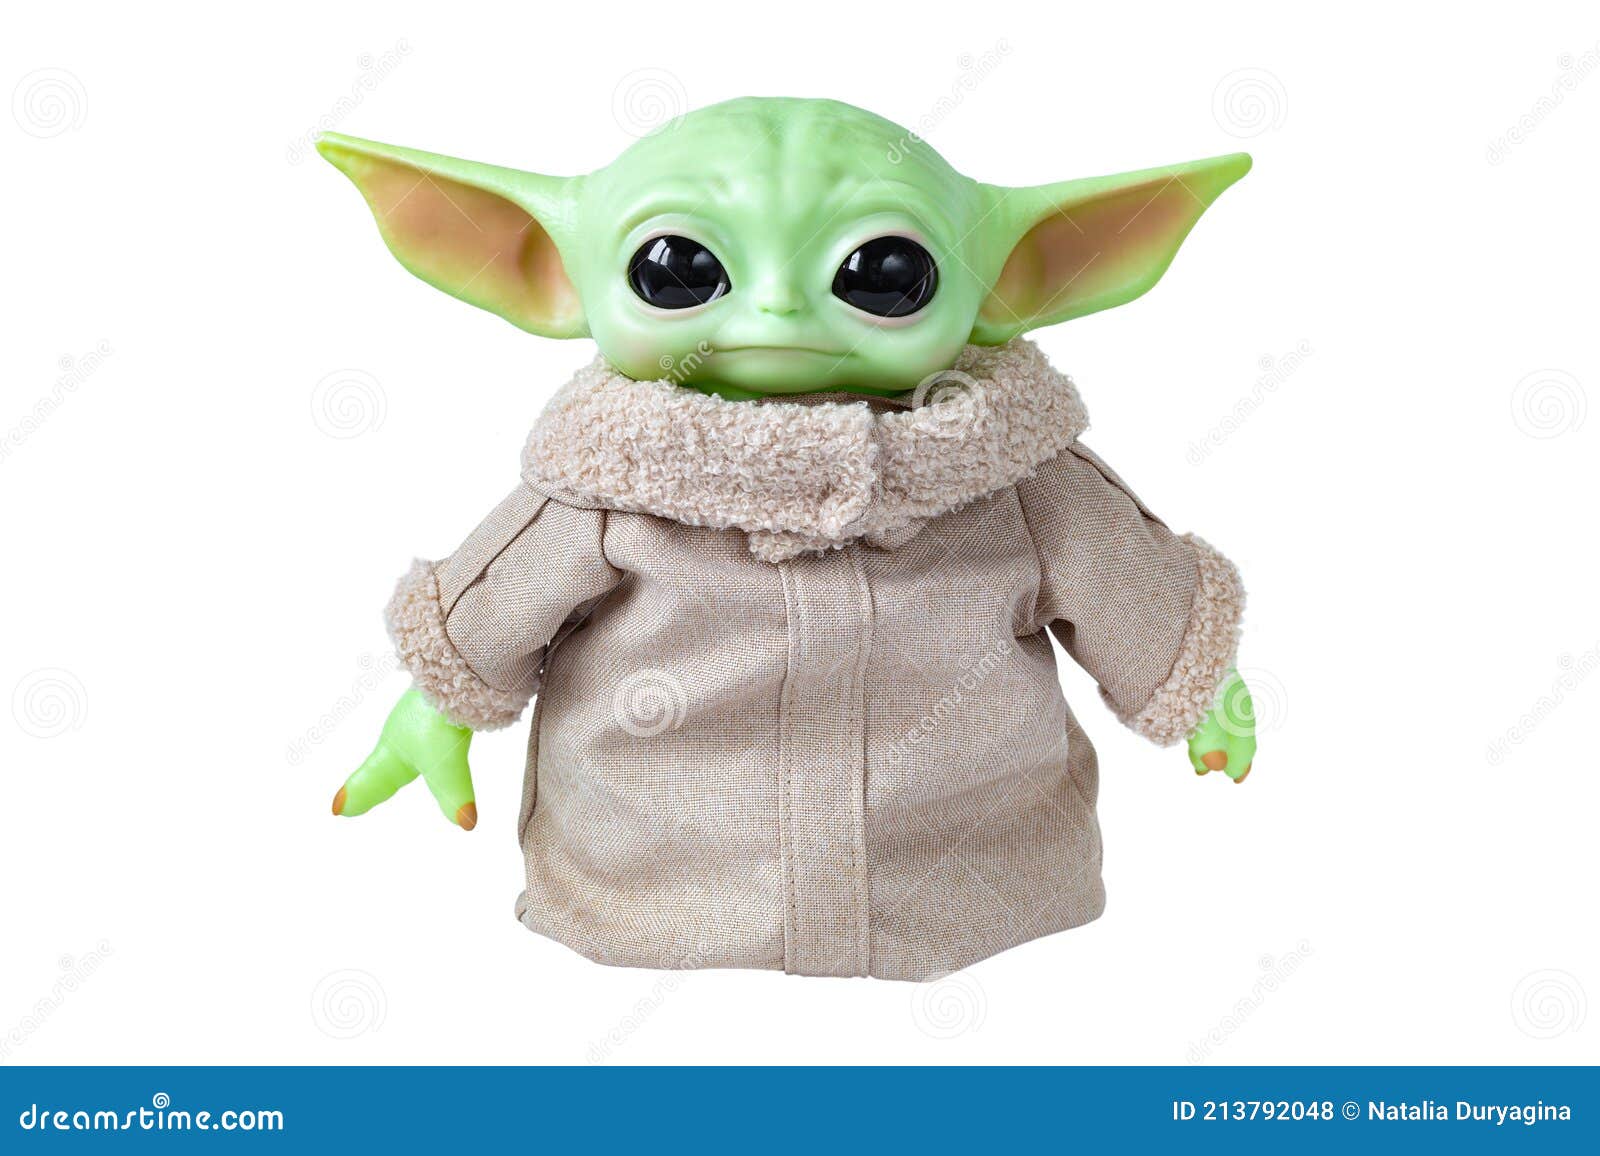 1,161 Yoda Fotos de stock - Fotos libres de regalías de Dreamstime